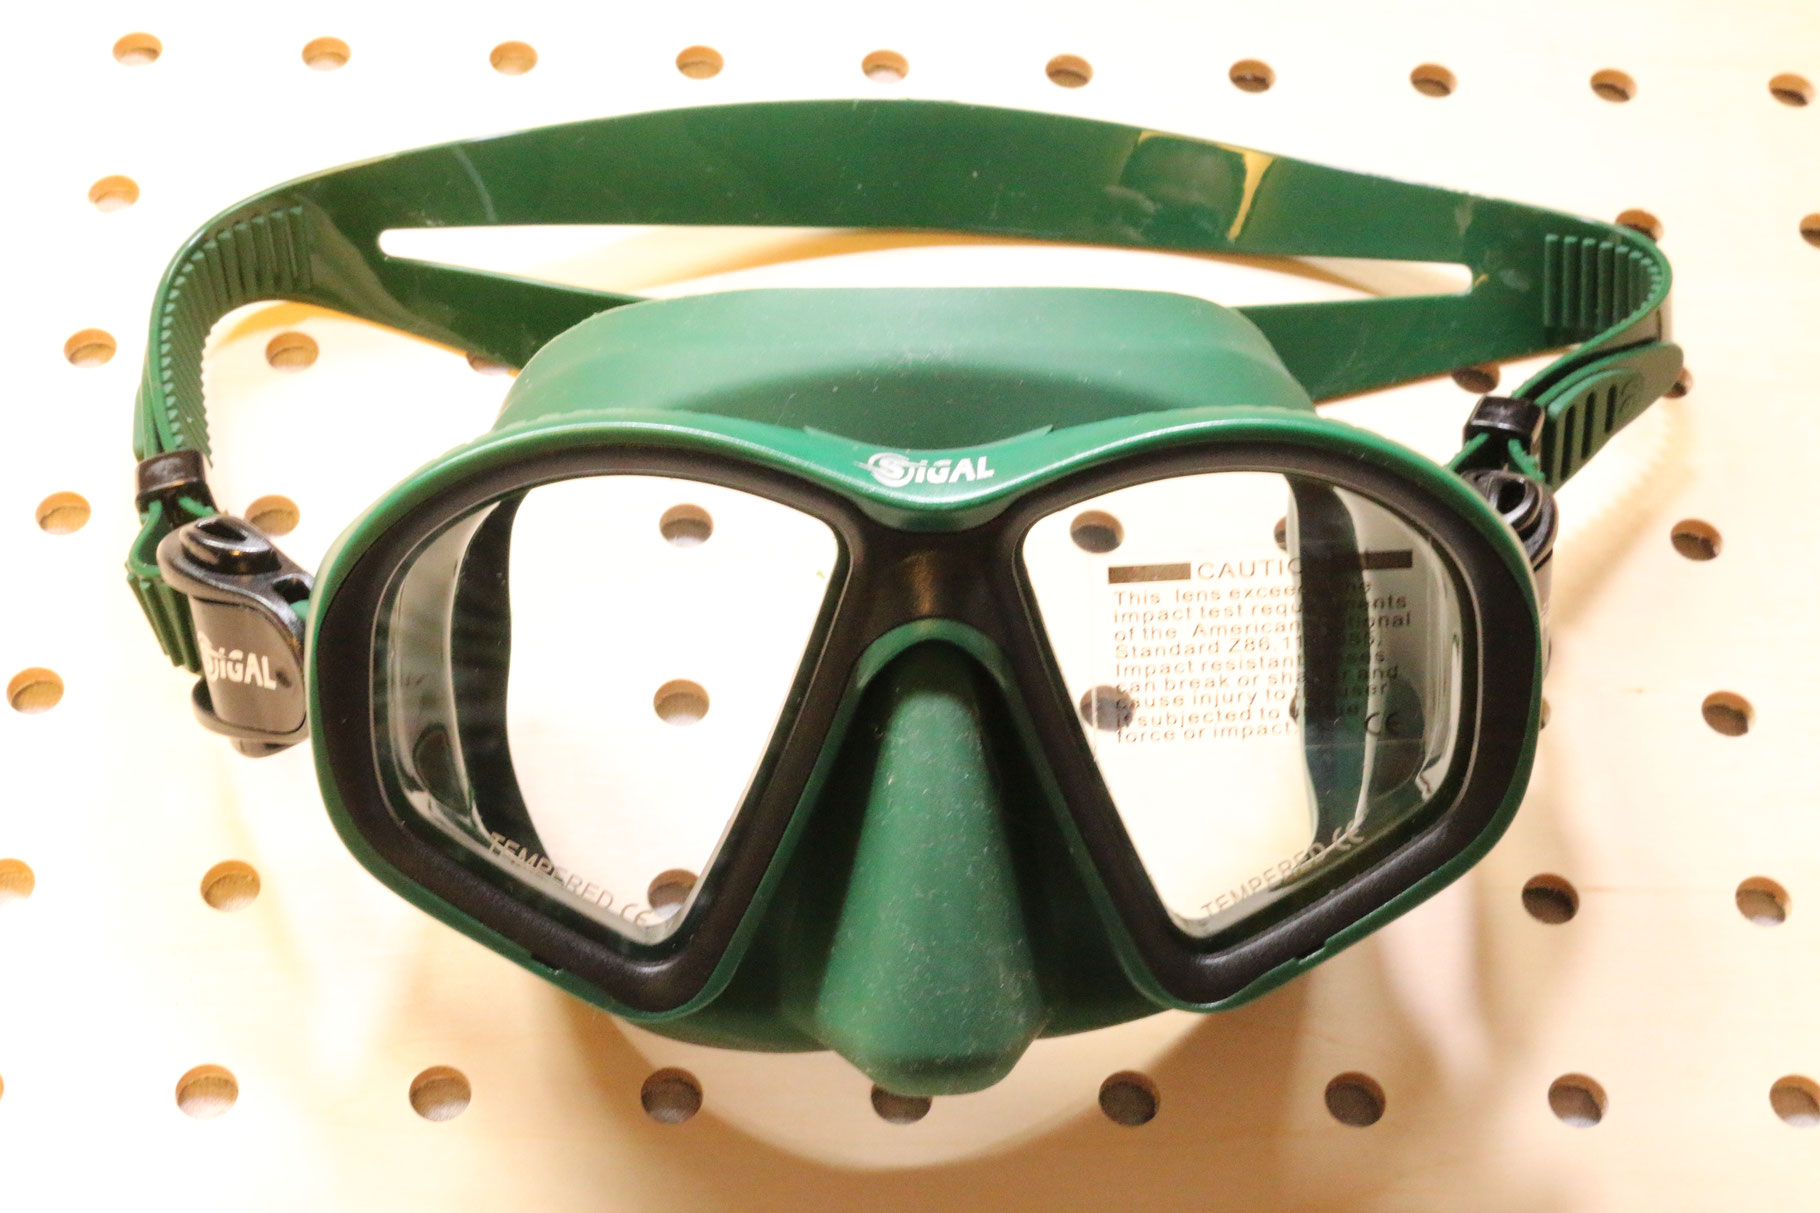 ダイビング マスク アポロ apollo バイオメタルマスク pro クロム bio metal mask 二眼 水中マスク スキューバダイビング フリーダイビング シュノーケリング シリコン スキューバ